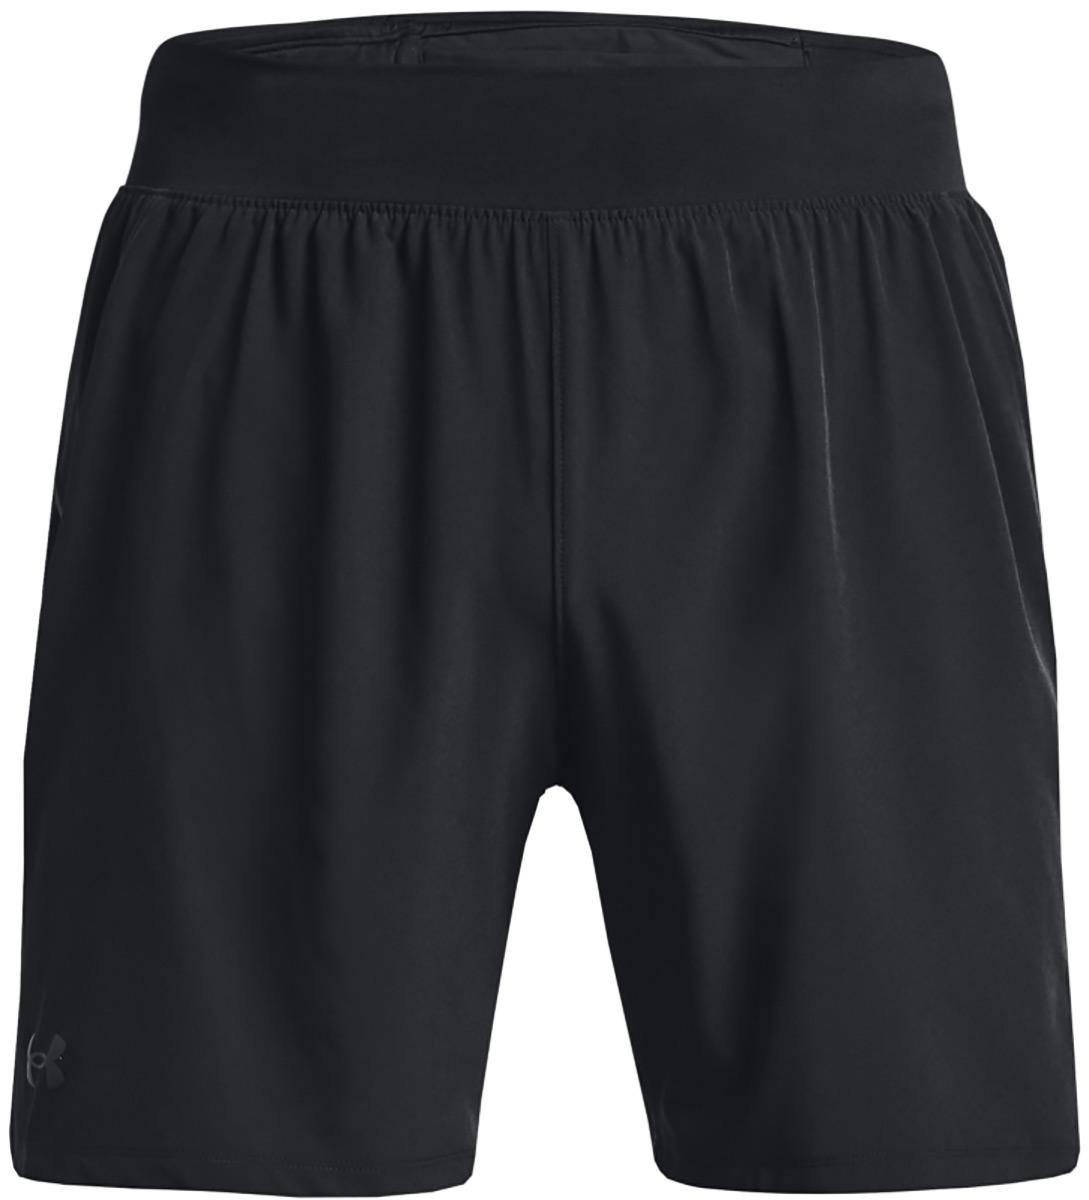 Under Armour Launch Elite 7 Shorts - Black/black/reflective